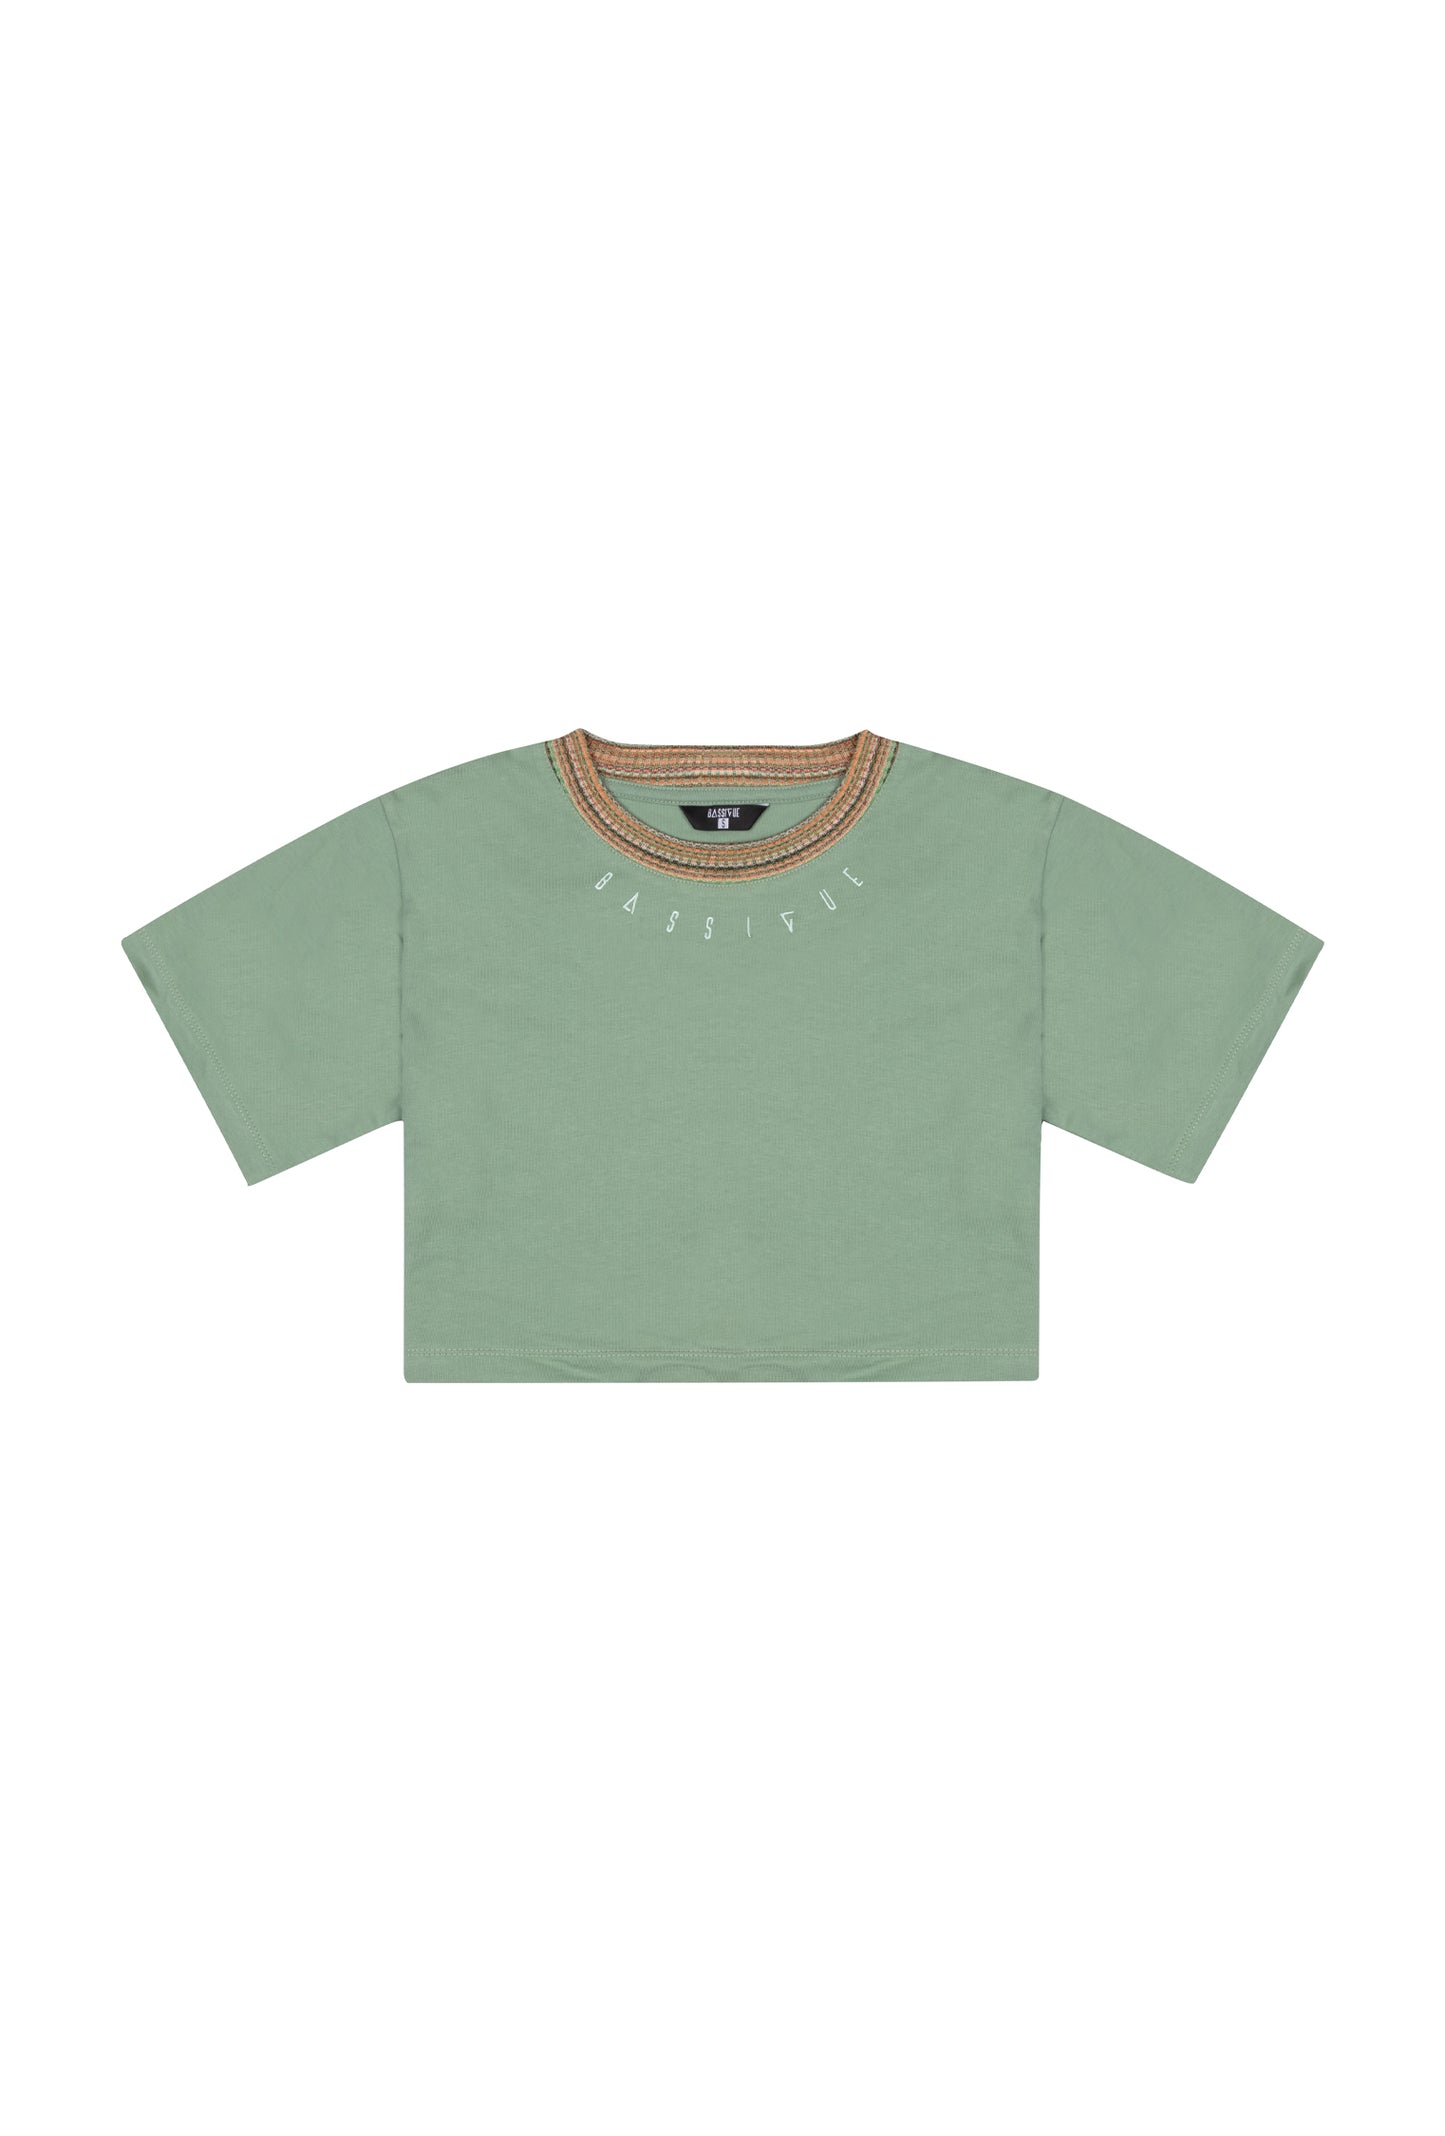 High Density Crop T-Shirt - Jade